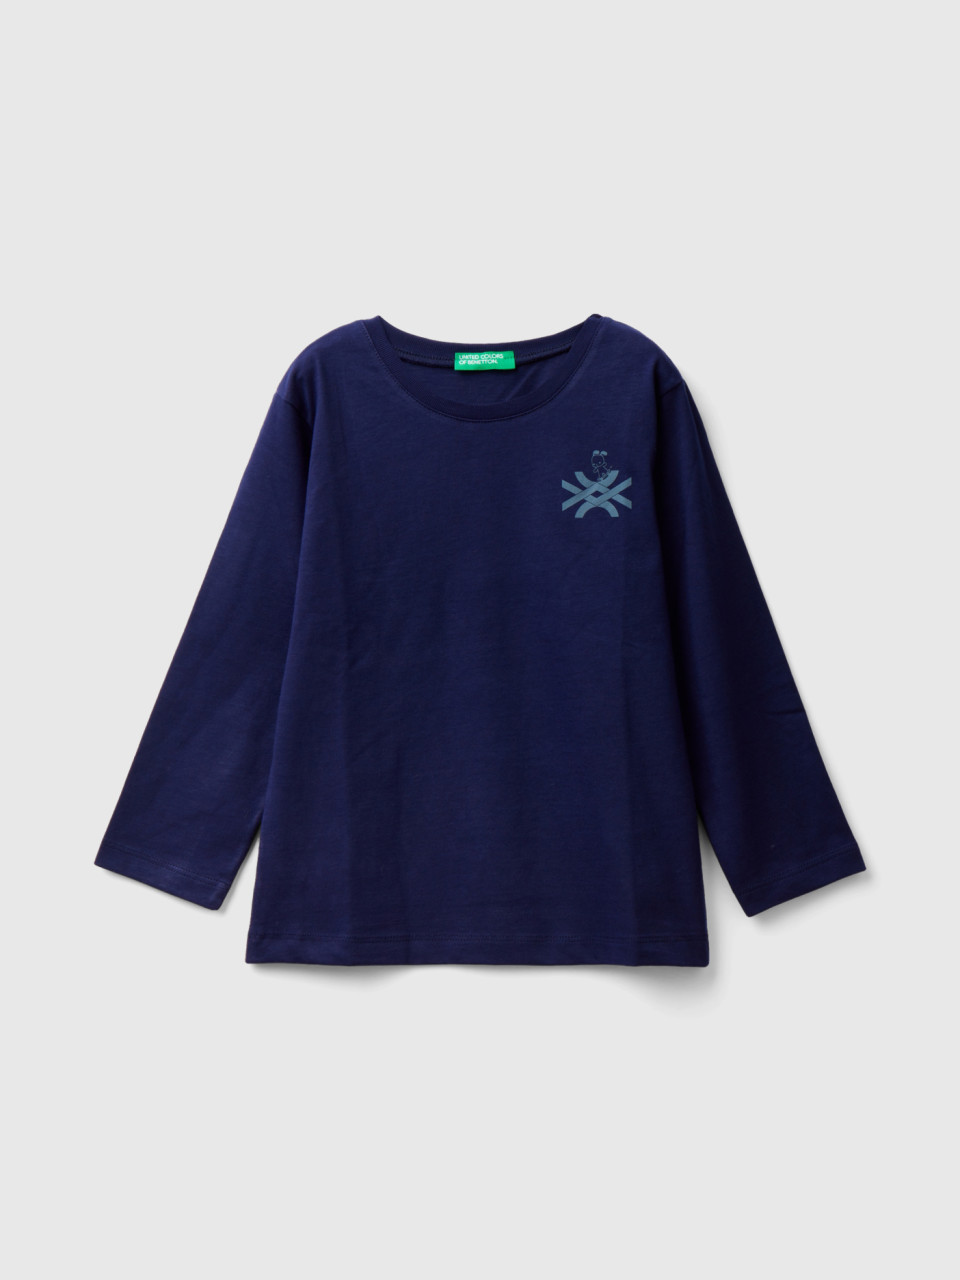 Benetton, Long Sleeve T-shirt With Logo, Dark Blue, Kids